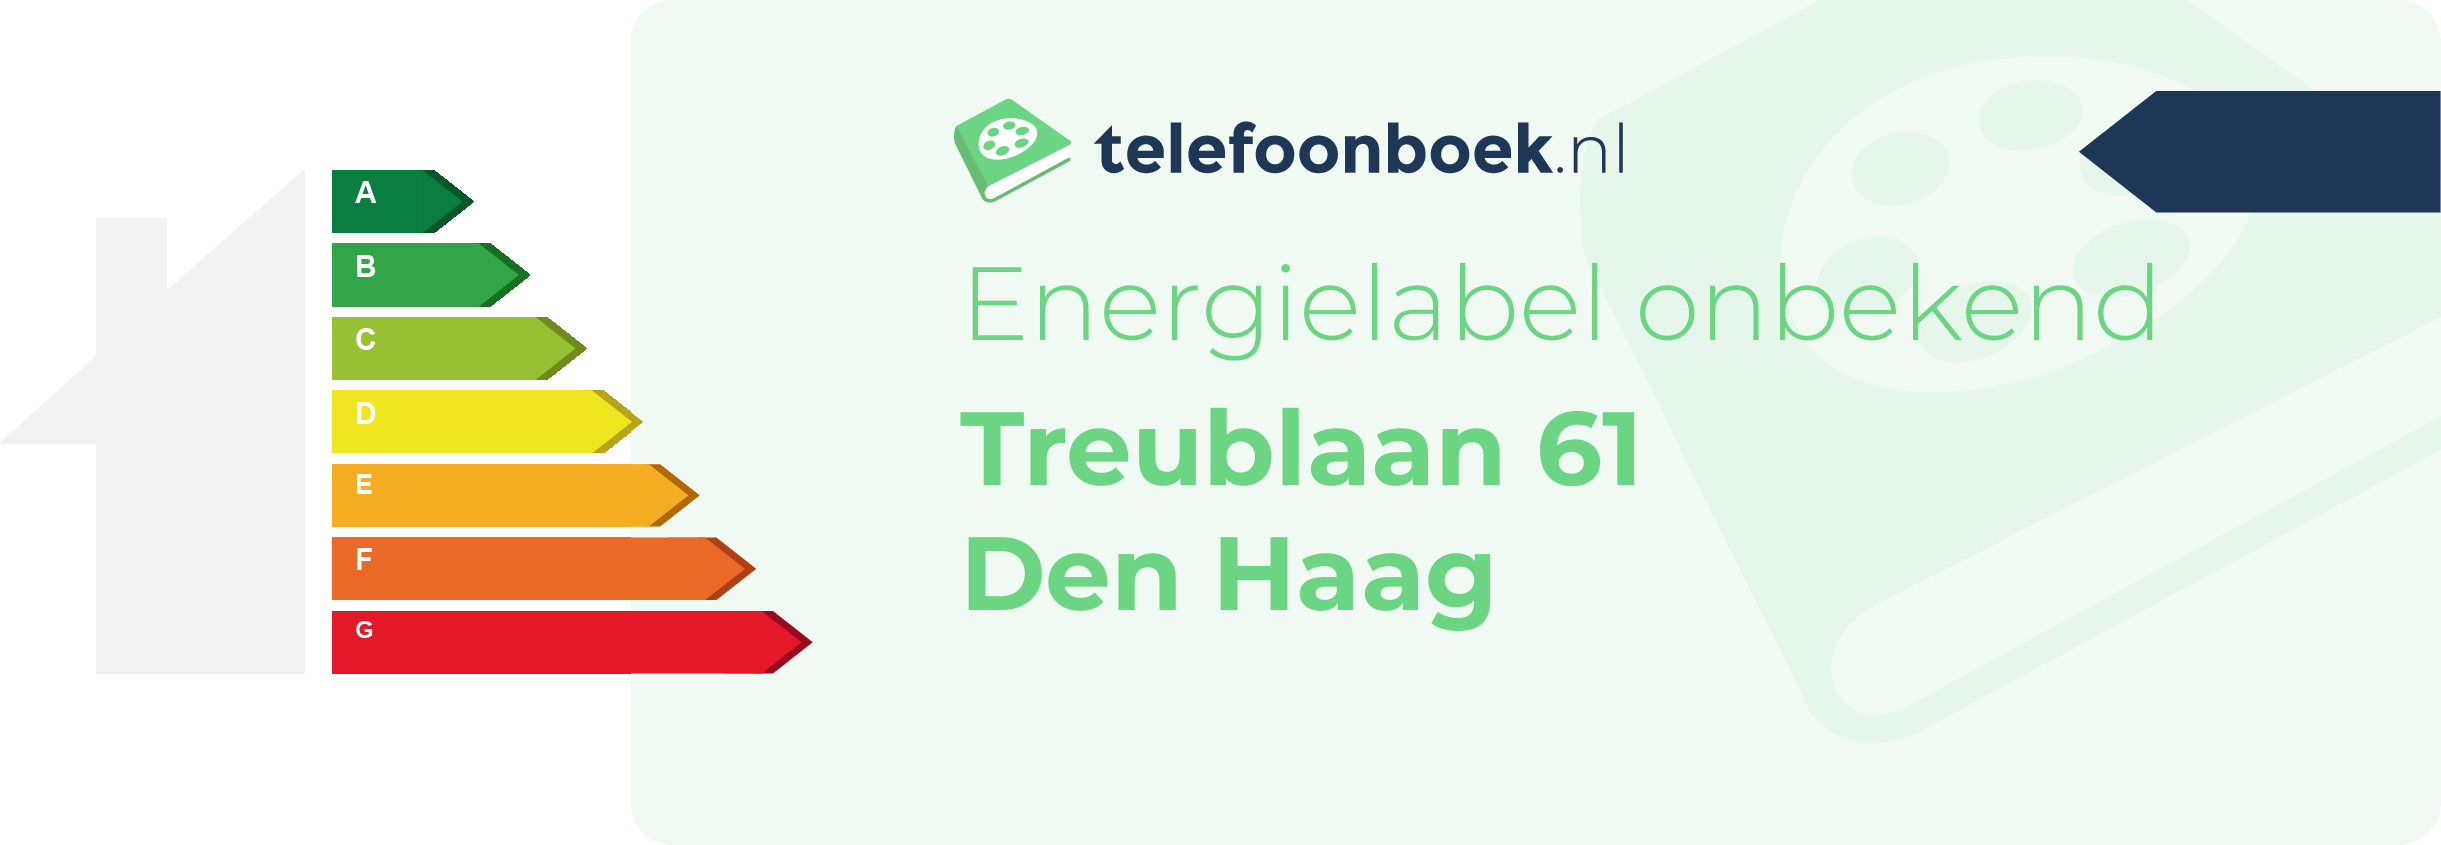 Energielabel Treublaan 61 Den Haag